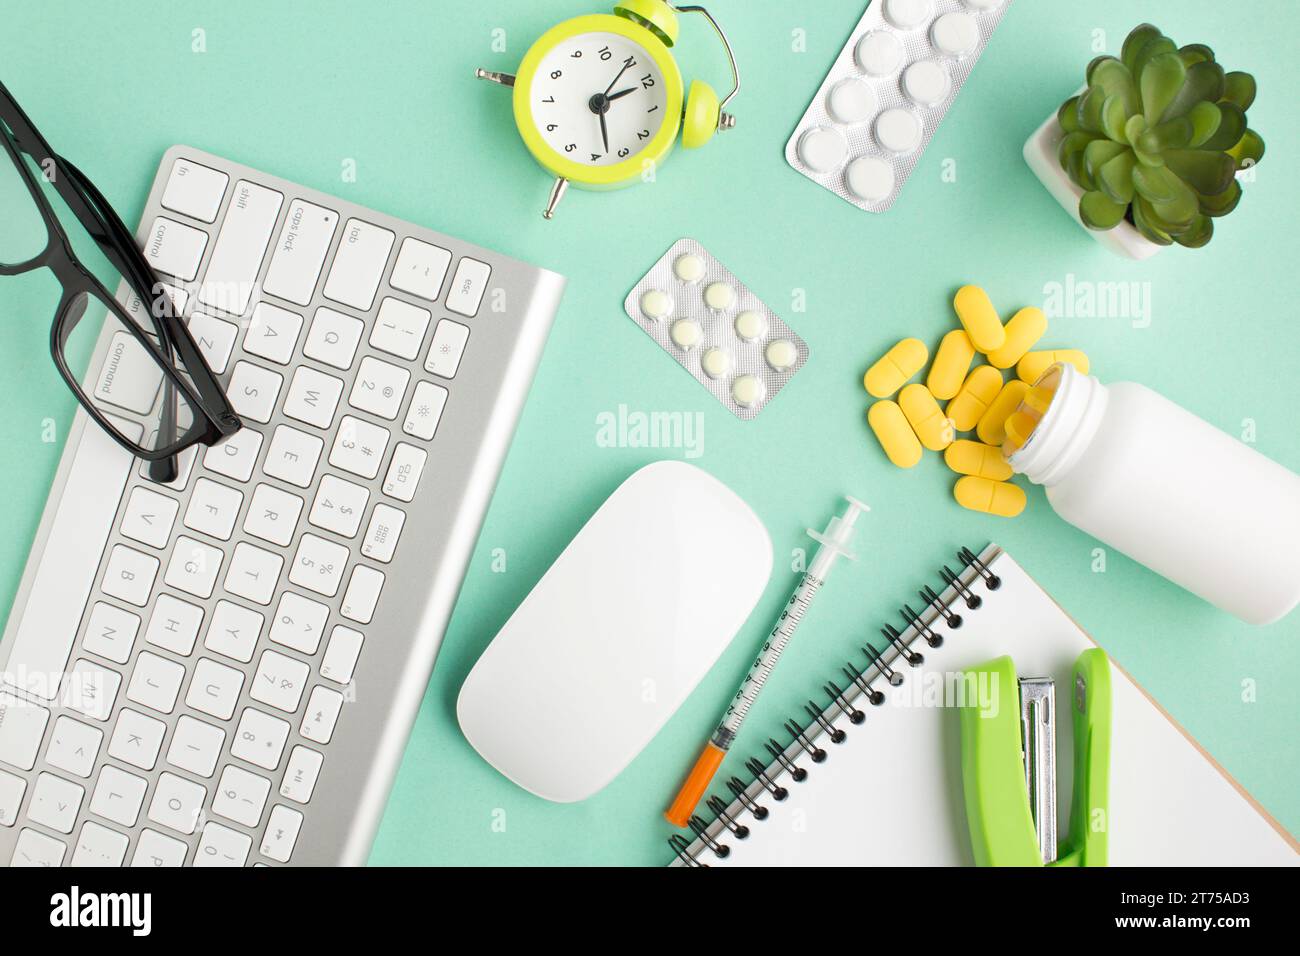 Medikamente Schreibwaren drahtlose Geräte Wecker grüner Hintergrund Stockfoto